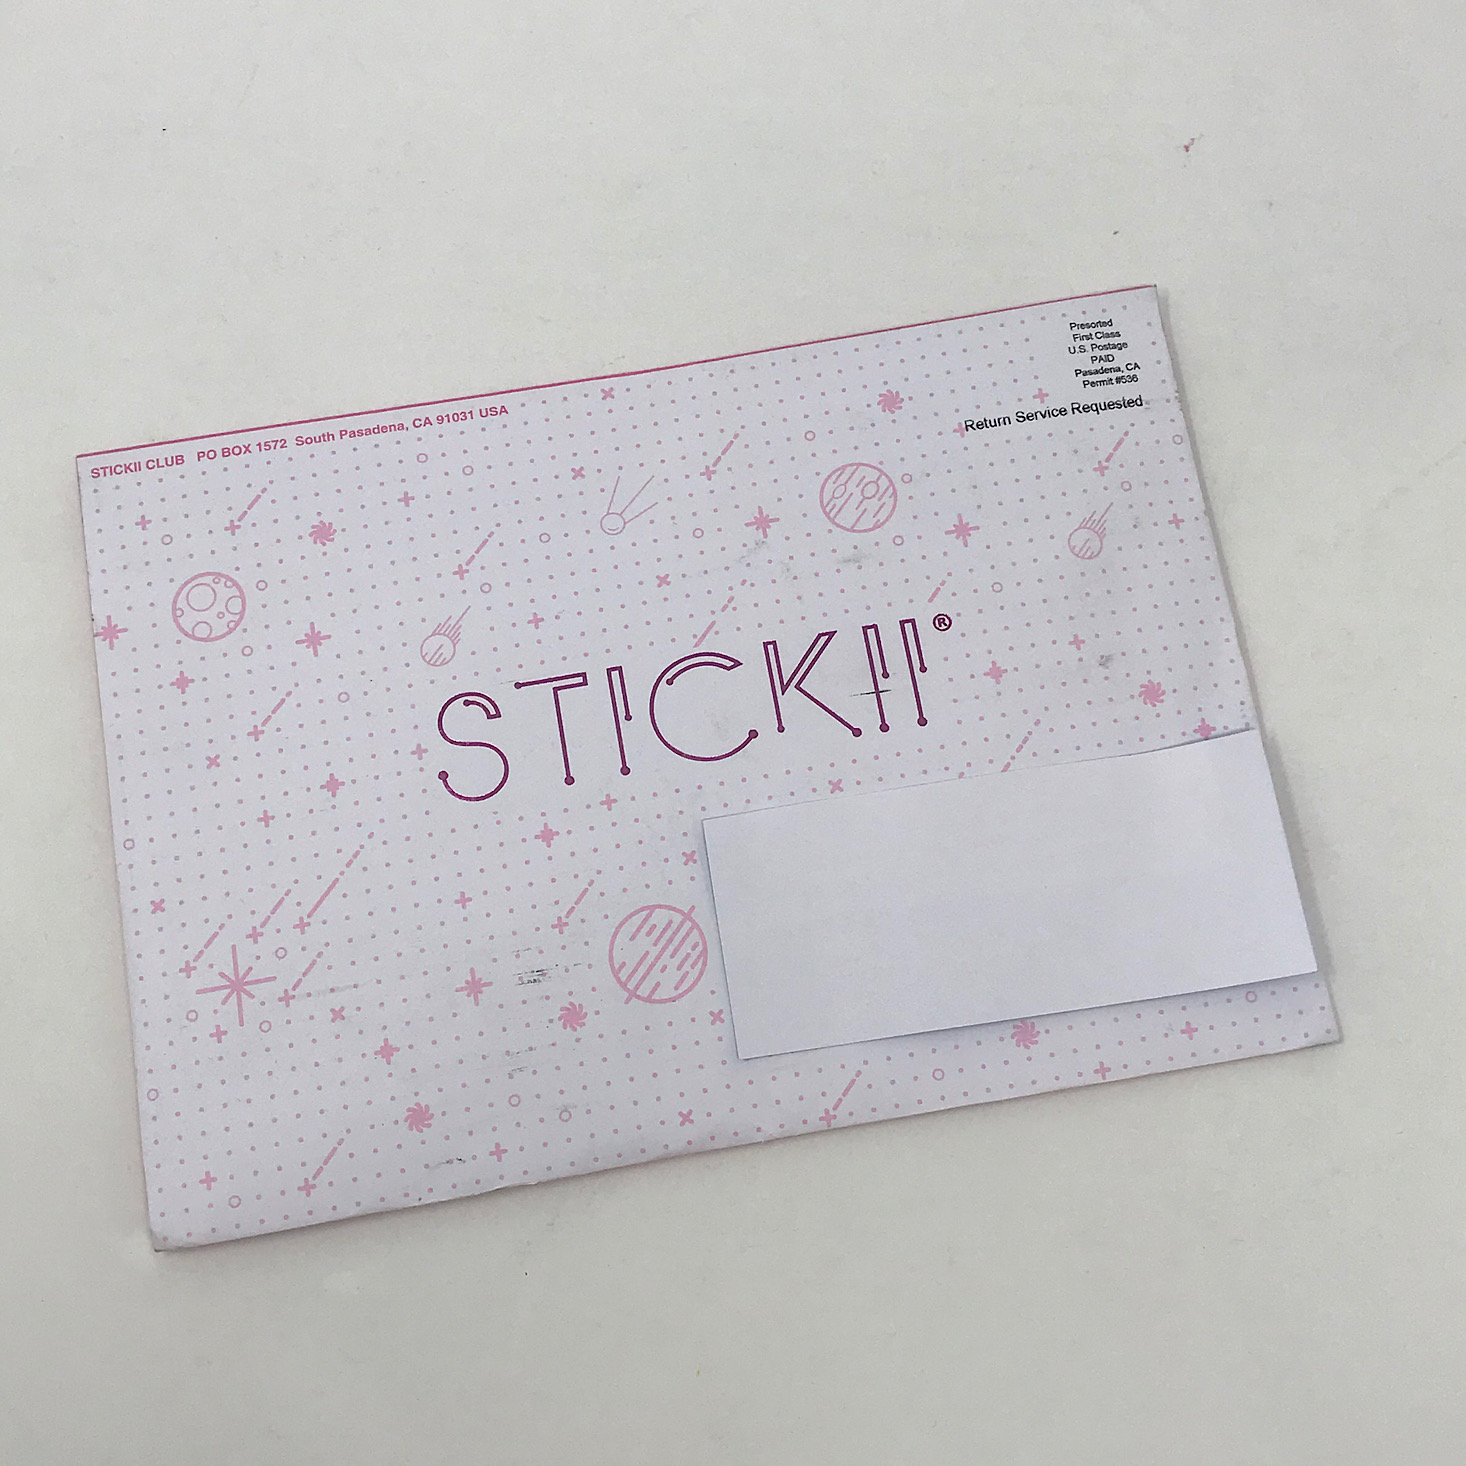 Stickii Sticker Cute Pack Review – November 2019